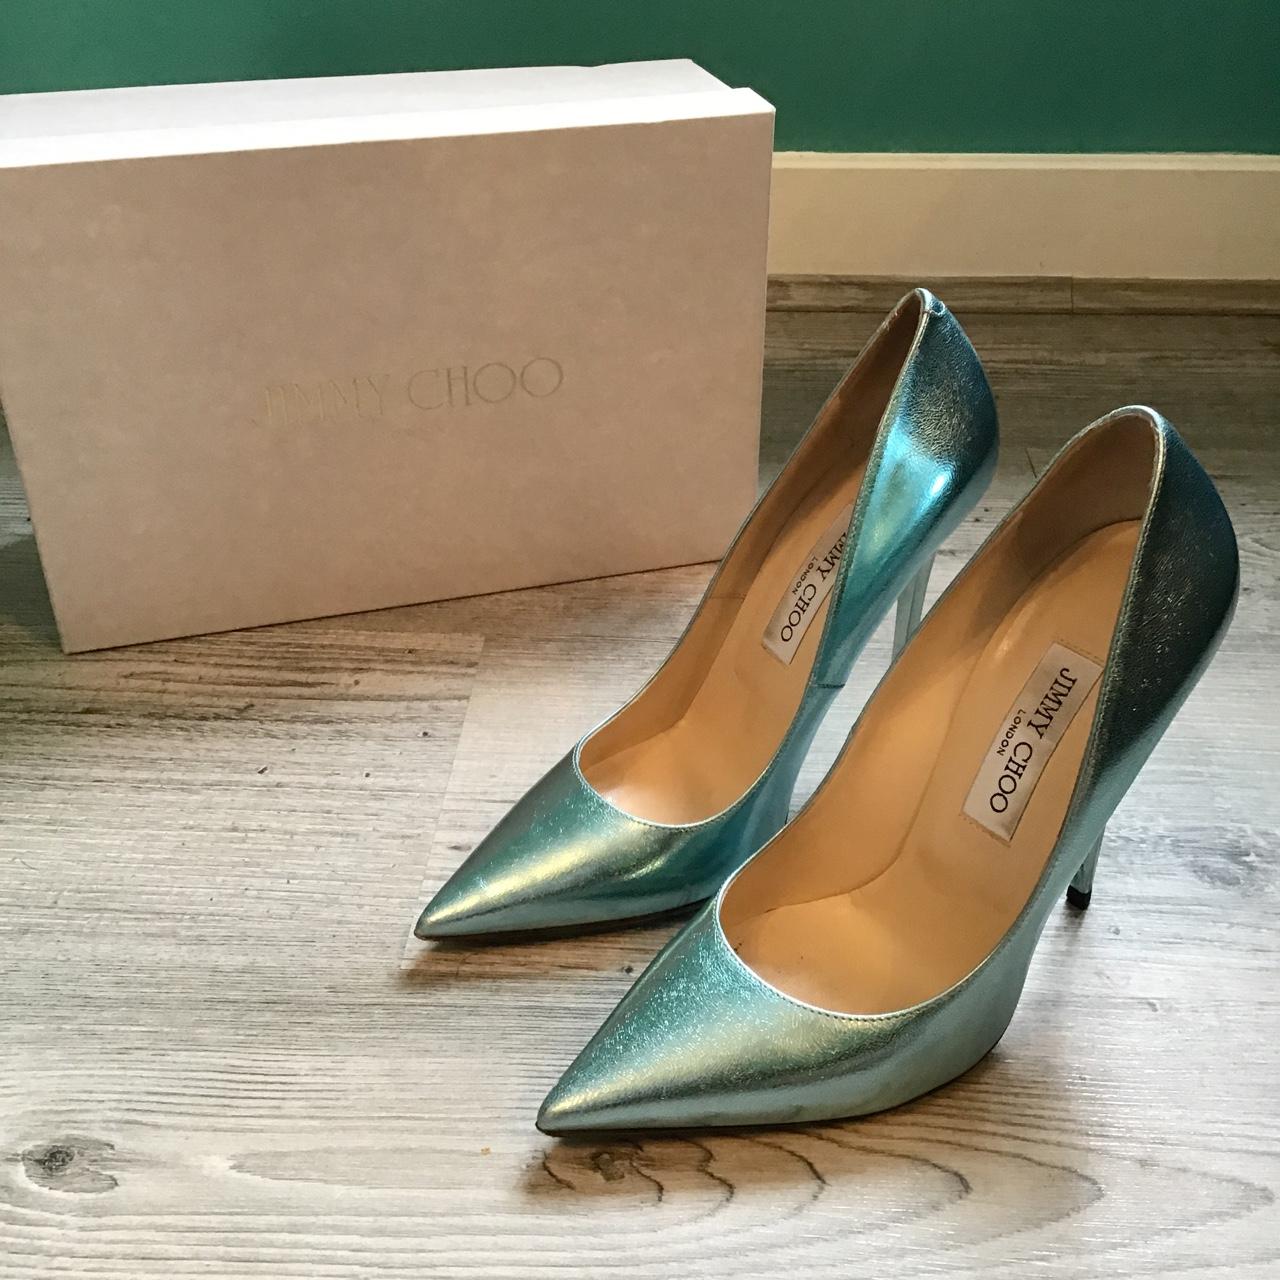 Gorgeous iridescent Jimmy Choo high heels. UK size... - Depop